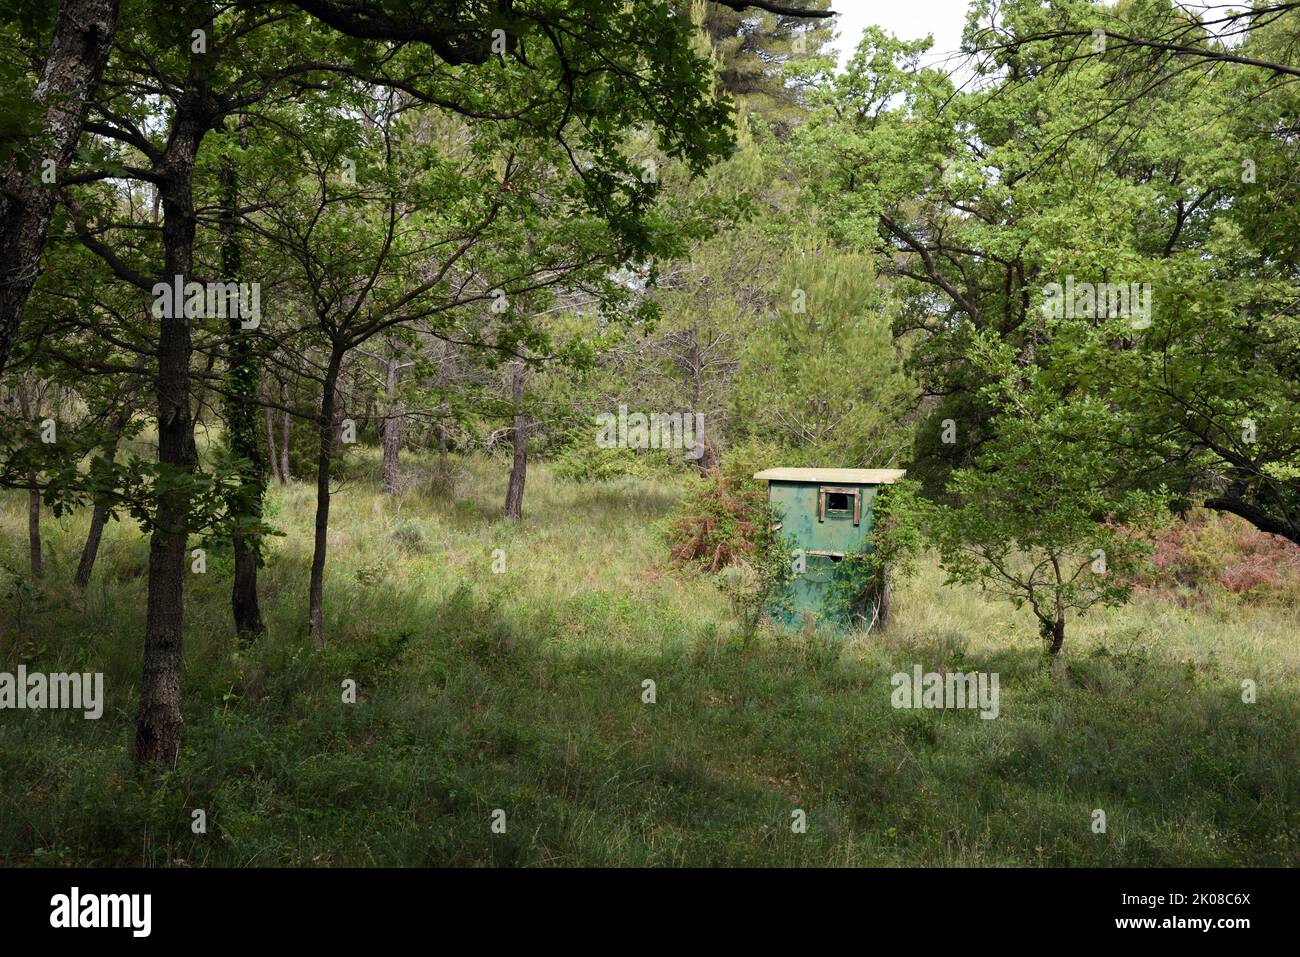 Cabaña de madera verde, piel de caza, caza ciego o piel de cazador en el bosque de Provenza Francia Foto de stock